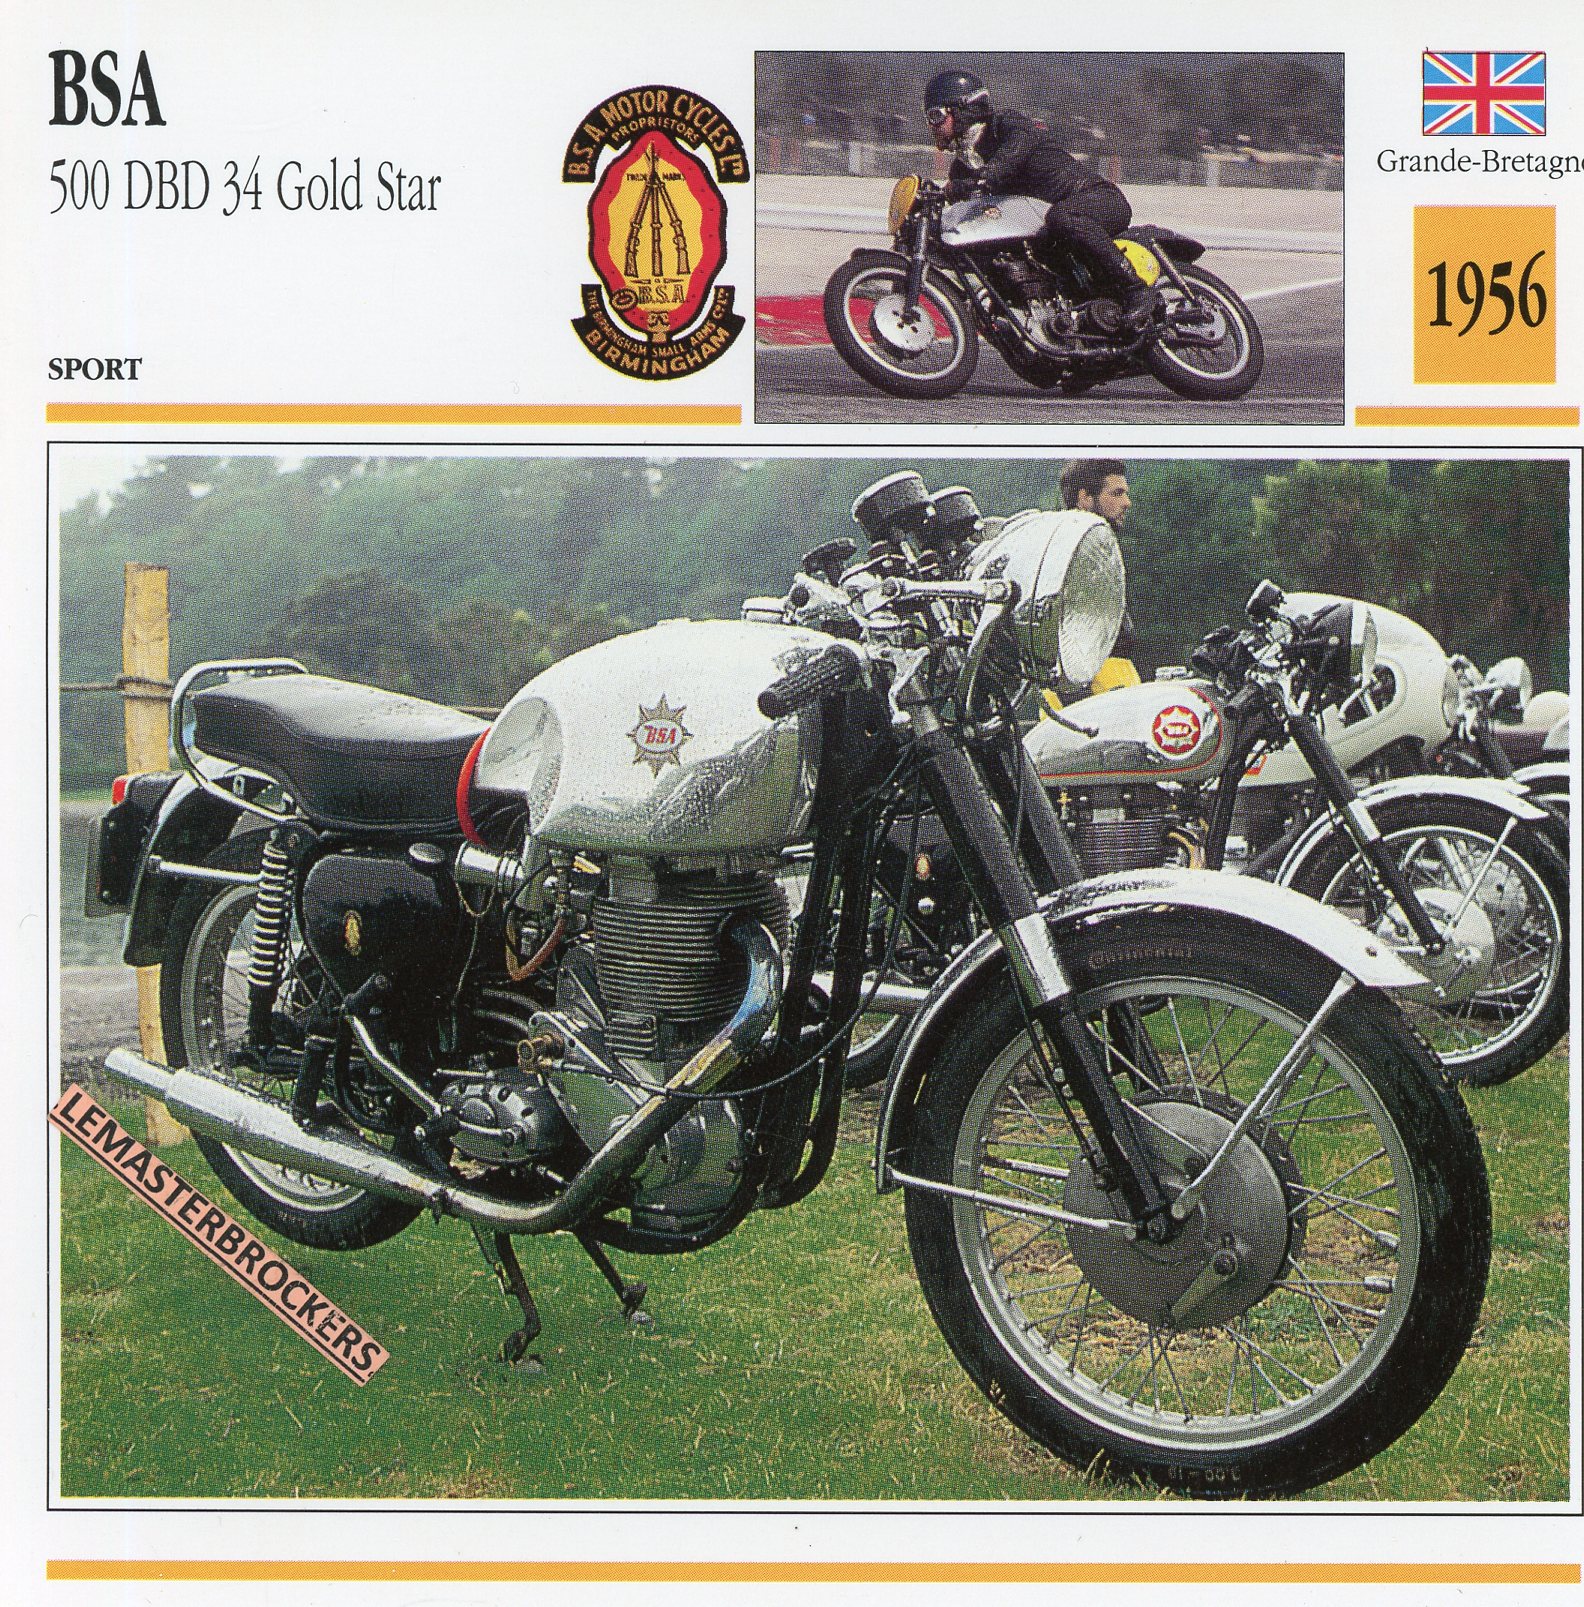 BSA-500-DBD-34-GOLD-STAR-1956-FICHE-MOTO-CARDS-ATLAS-LEMASTERBROCKERS